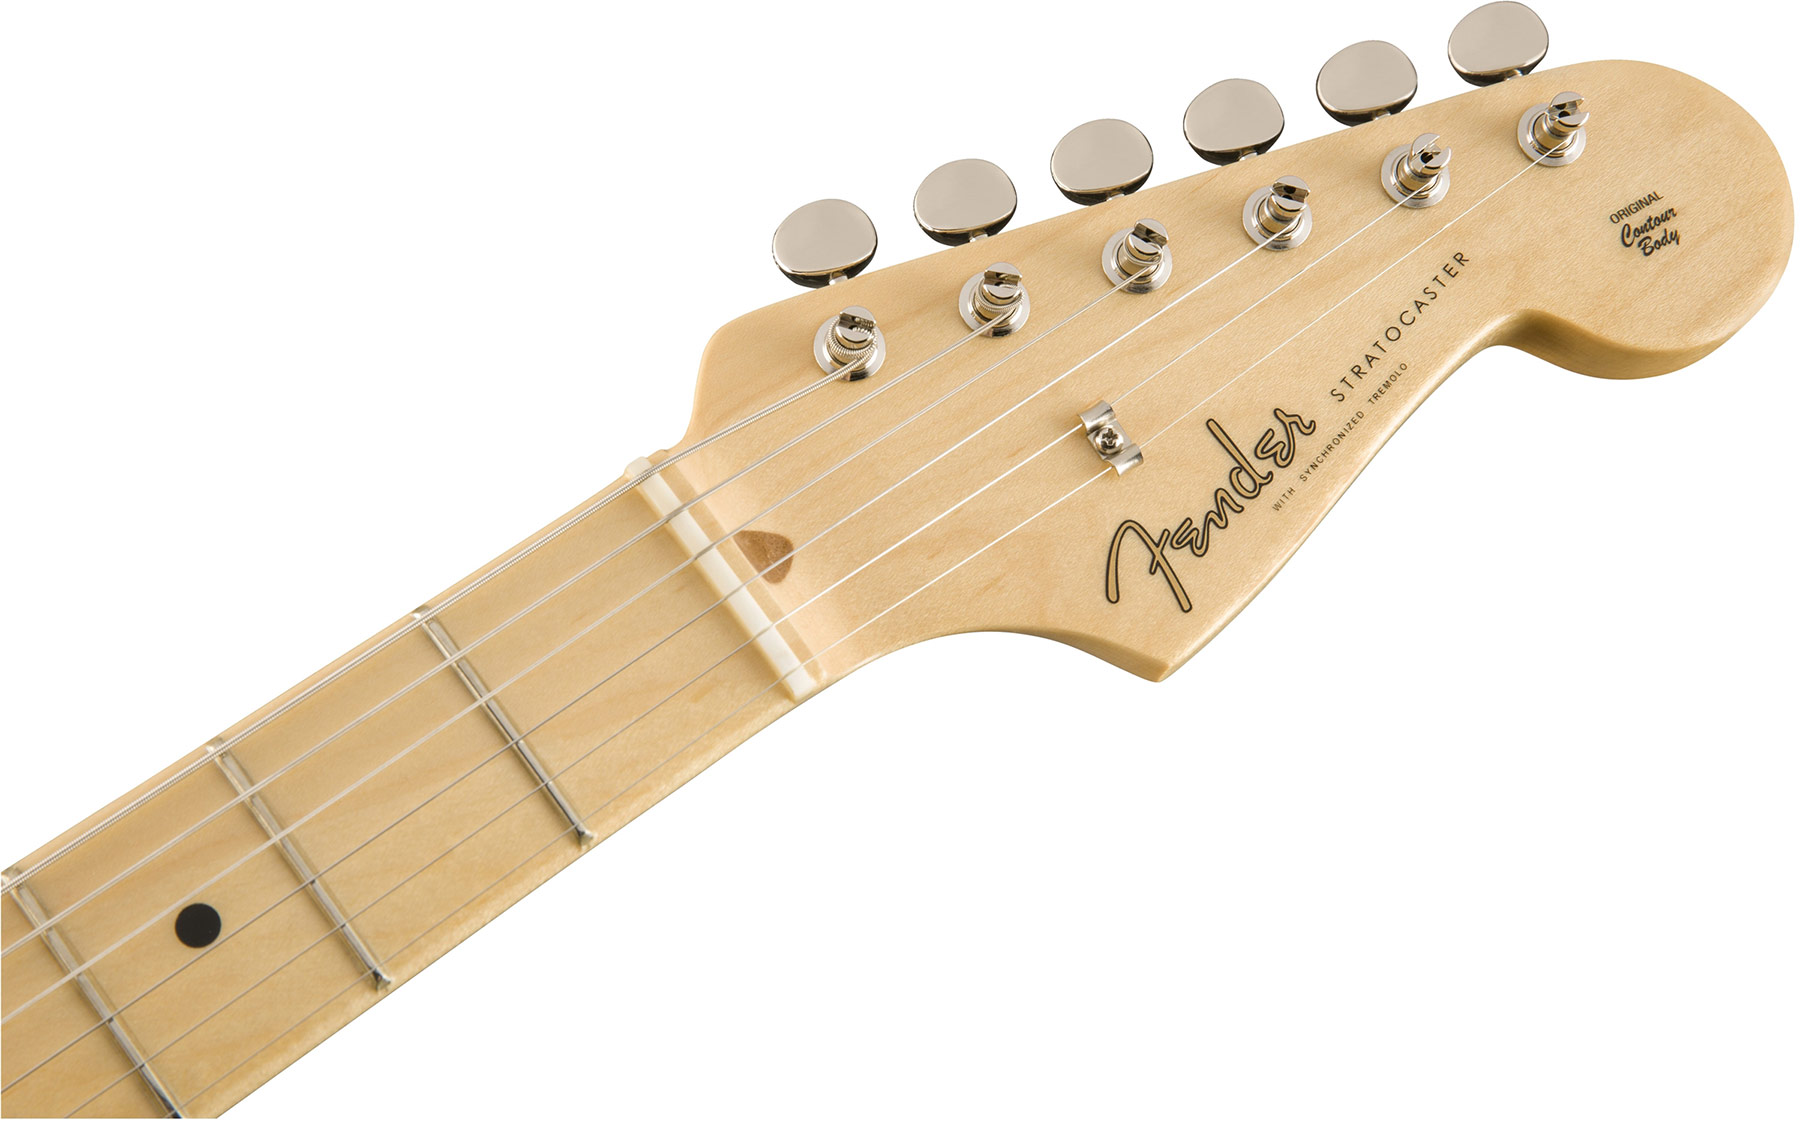 Fender Strat '50s American Original Usa Sss Mn - 2-color Sunburst - Str shape electric guitar - Variation 2